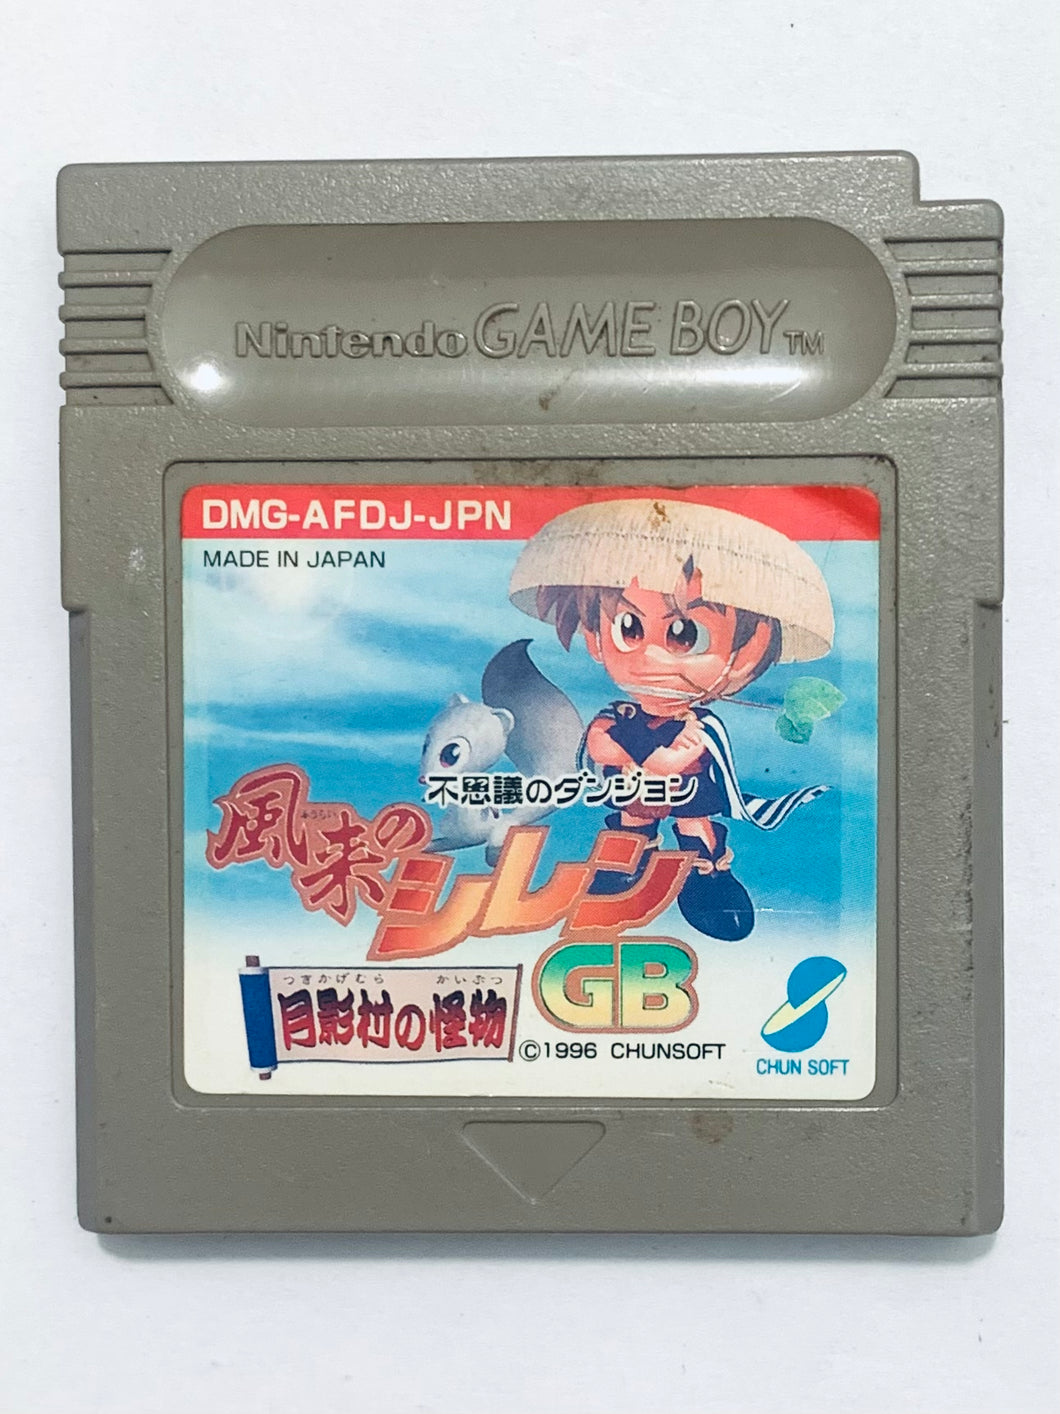 Fushigi no Dungeon: Furai no Shiren - GameBoy - Game Boy - Pocket - GBC - GBA - JP - Cartridge (DMG-AFDJ-JPN)